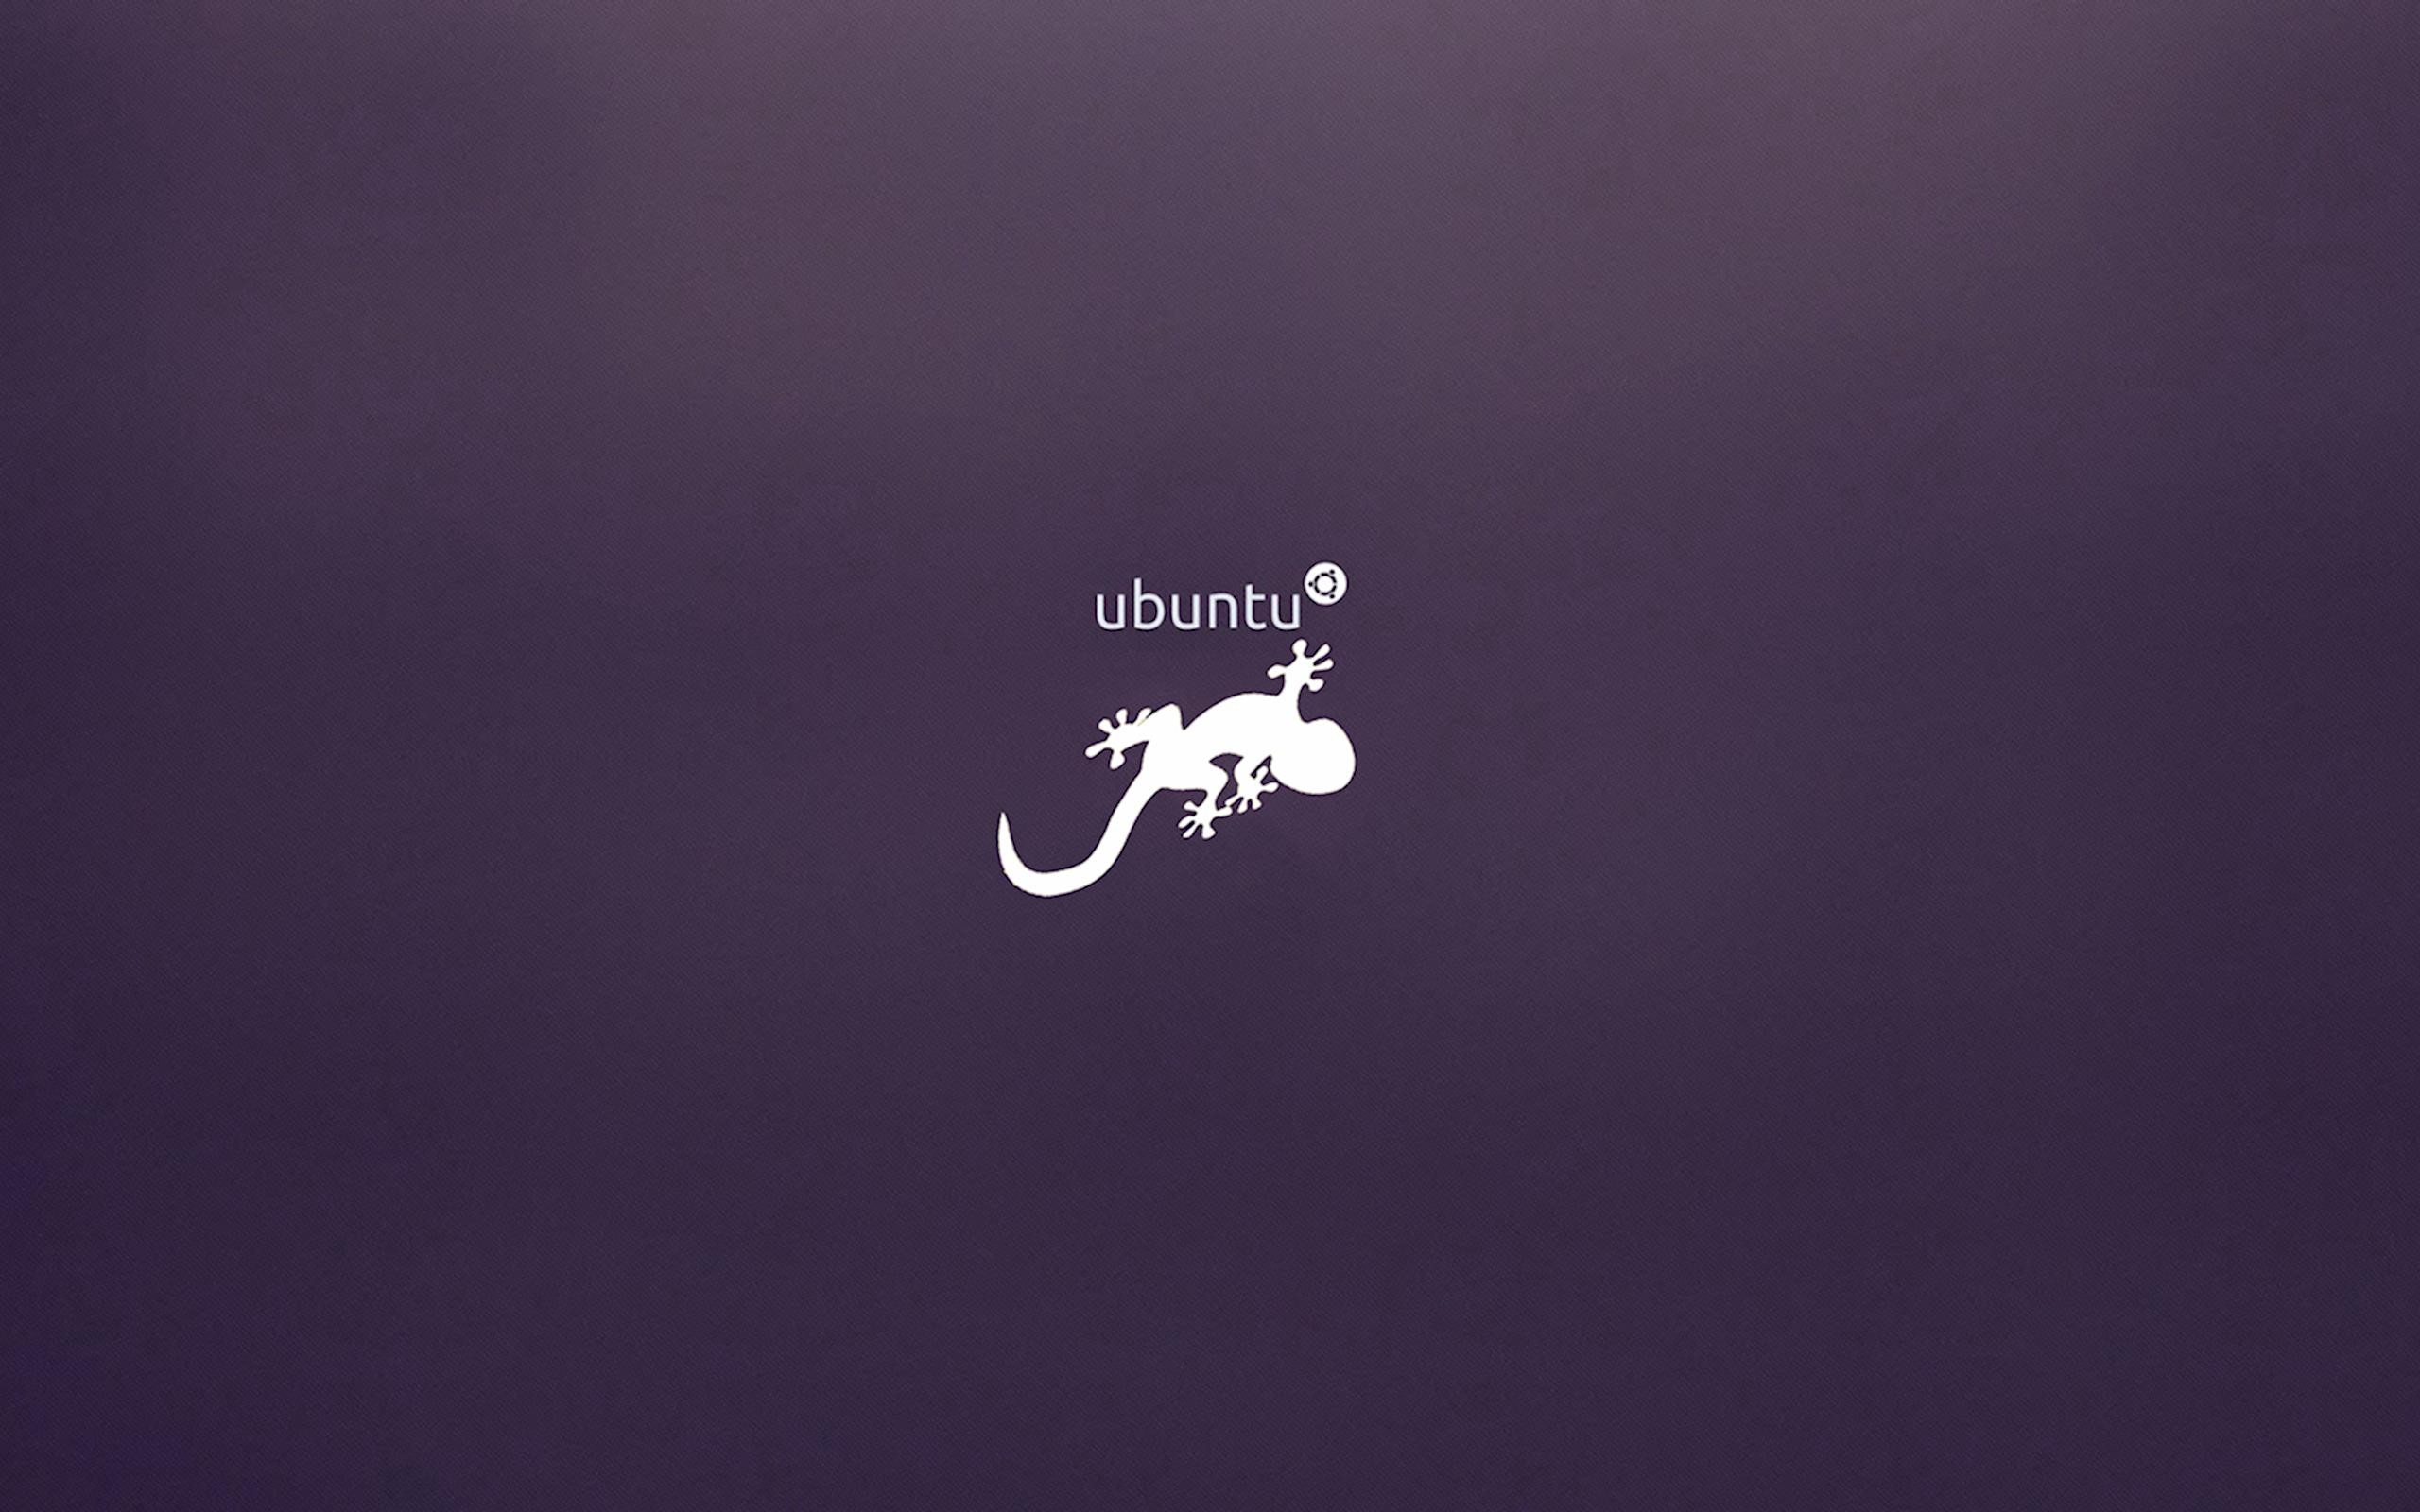 General 2560x1600 Ubuntu logo purple background operating system